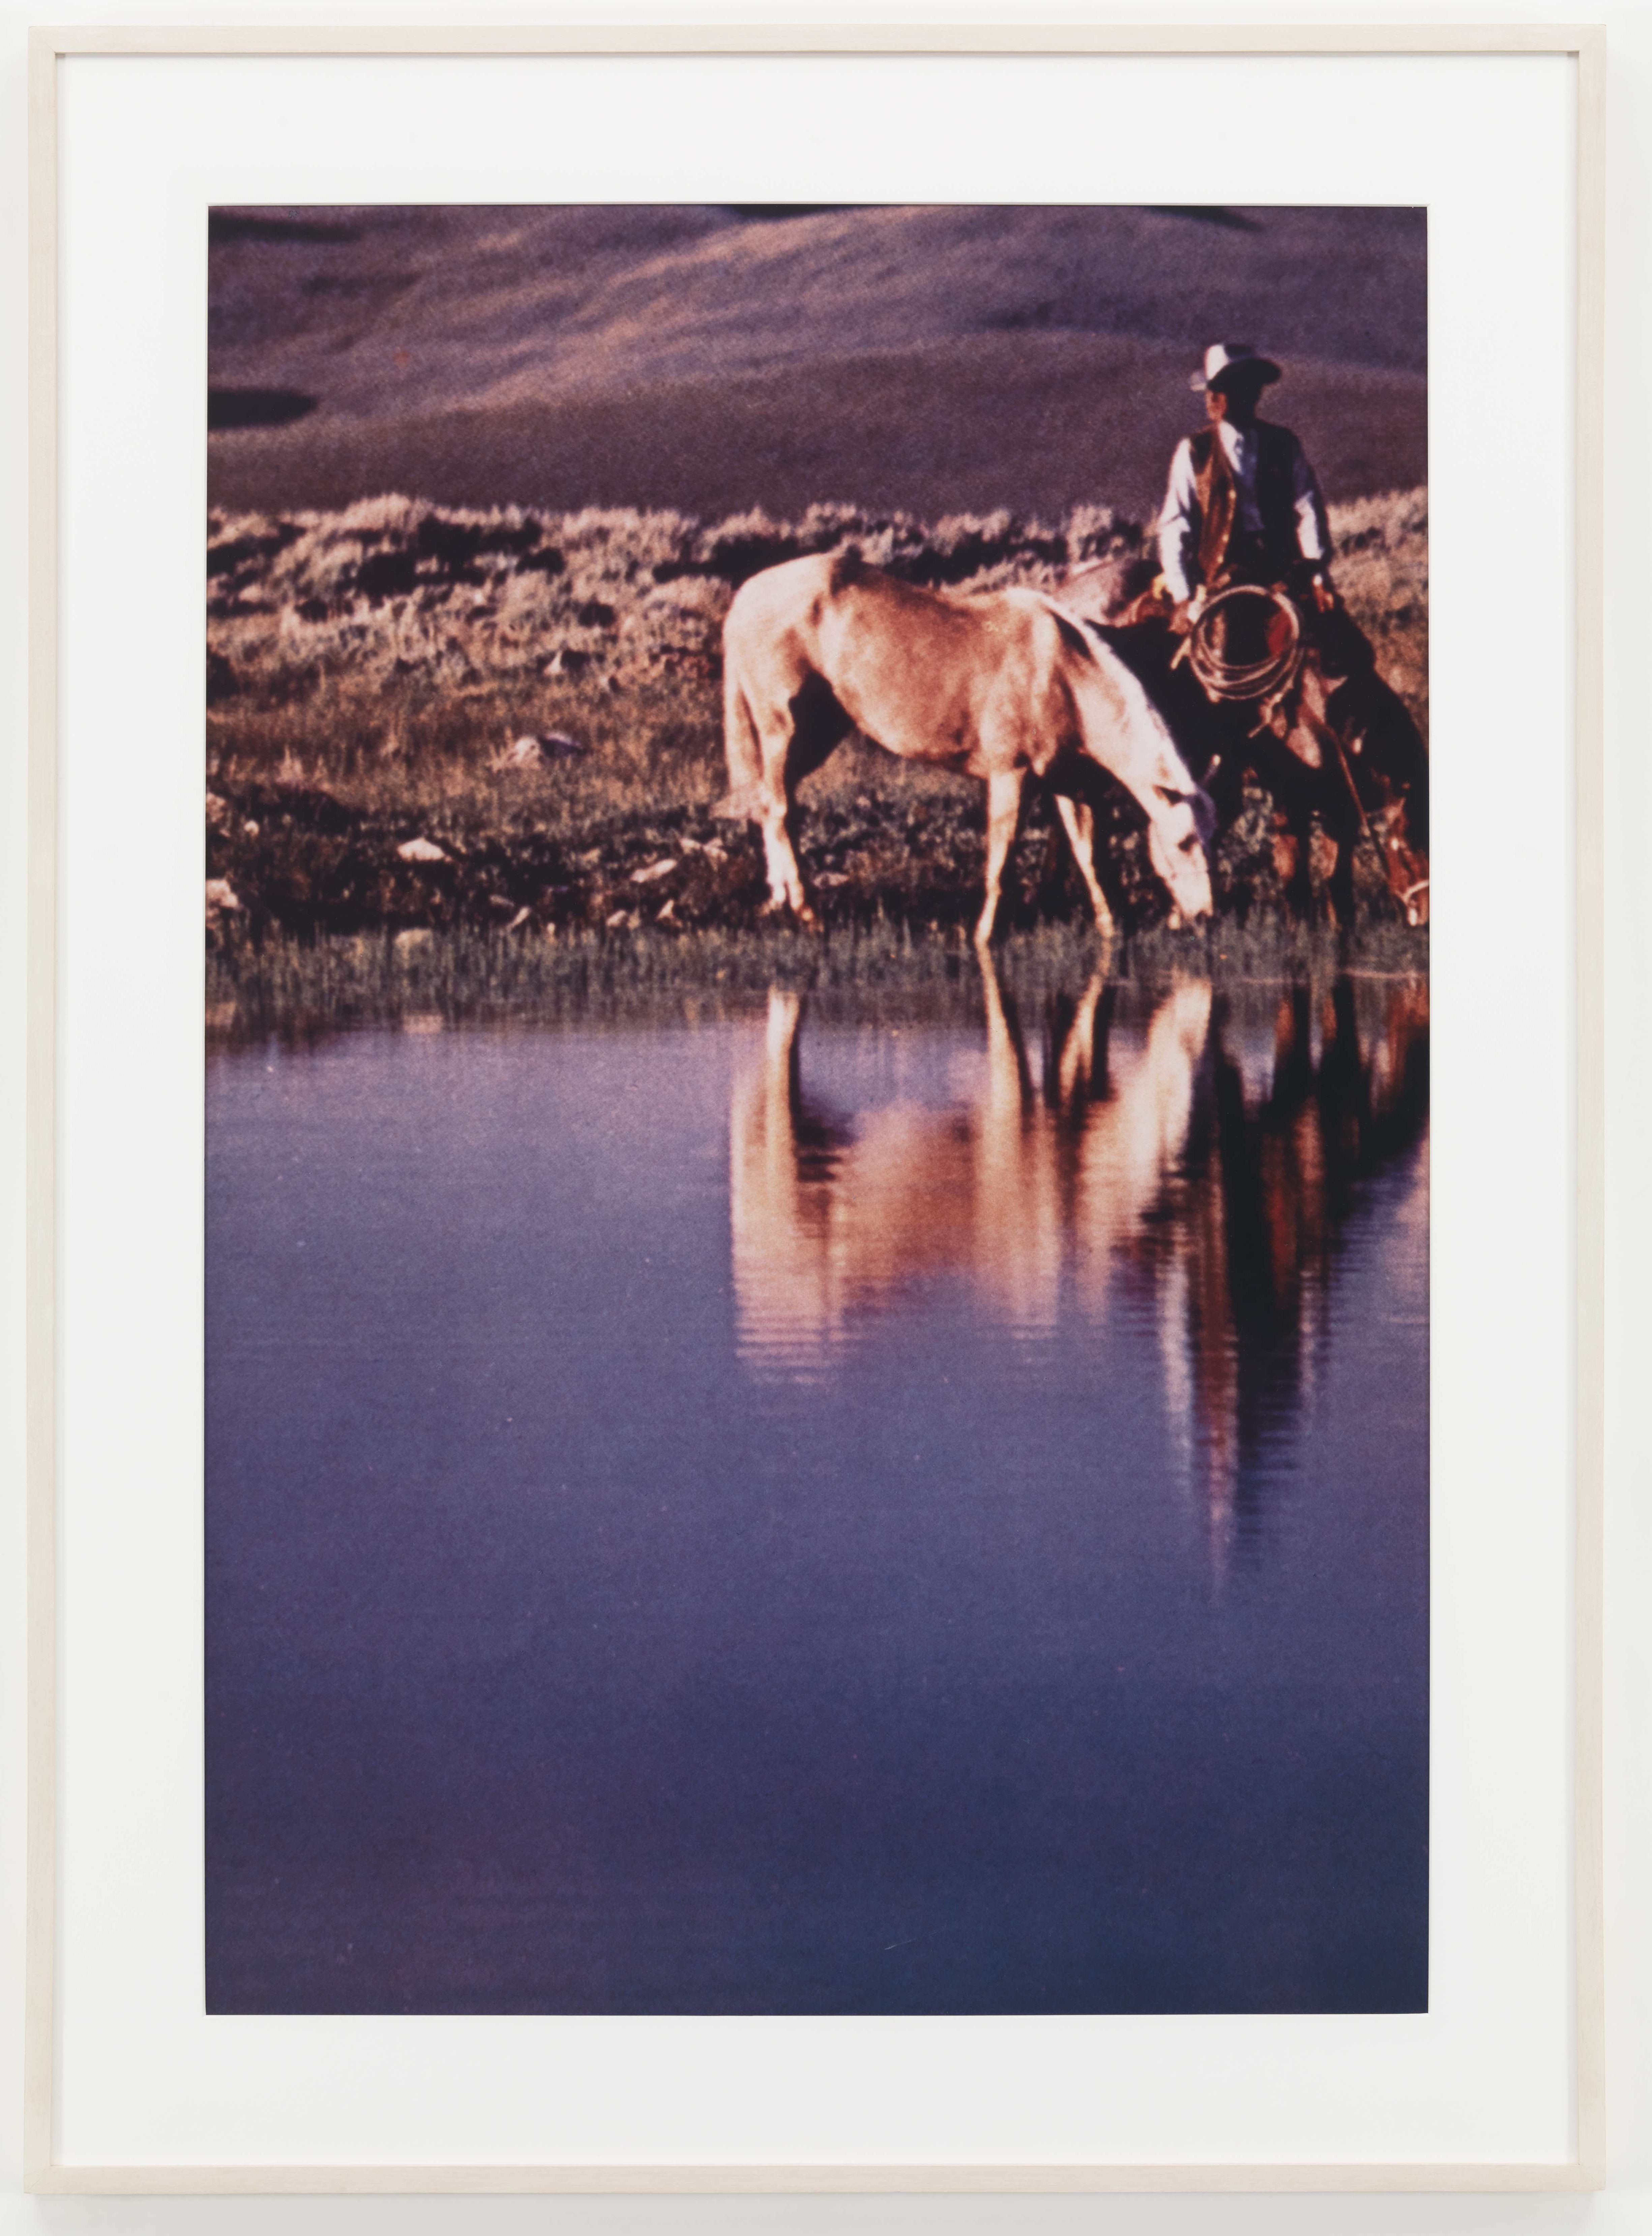 Untitled (Cowboy), 1982-1986